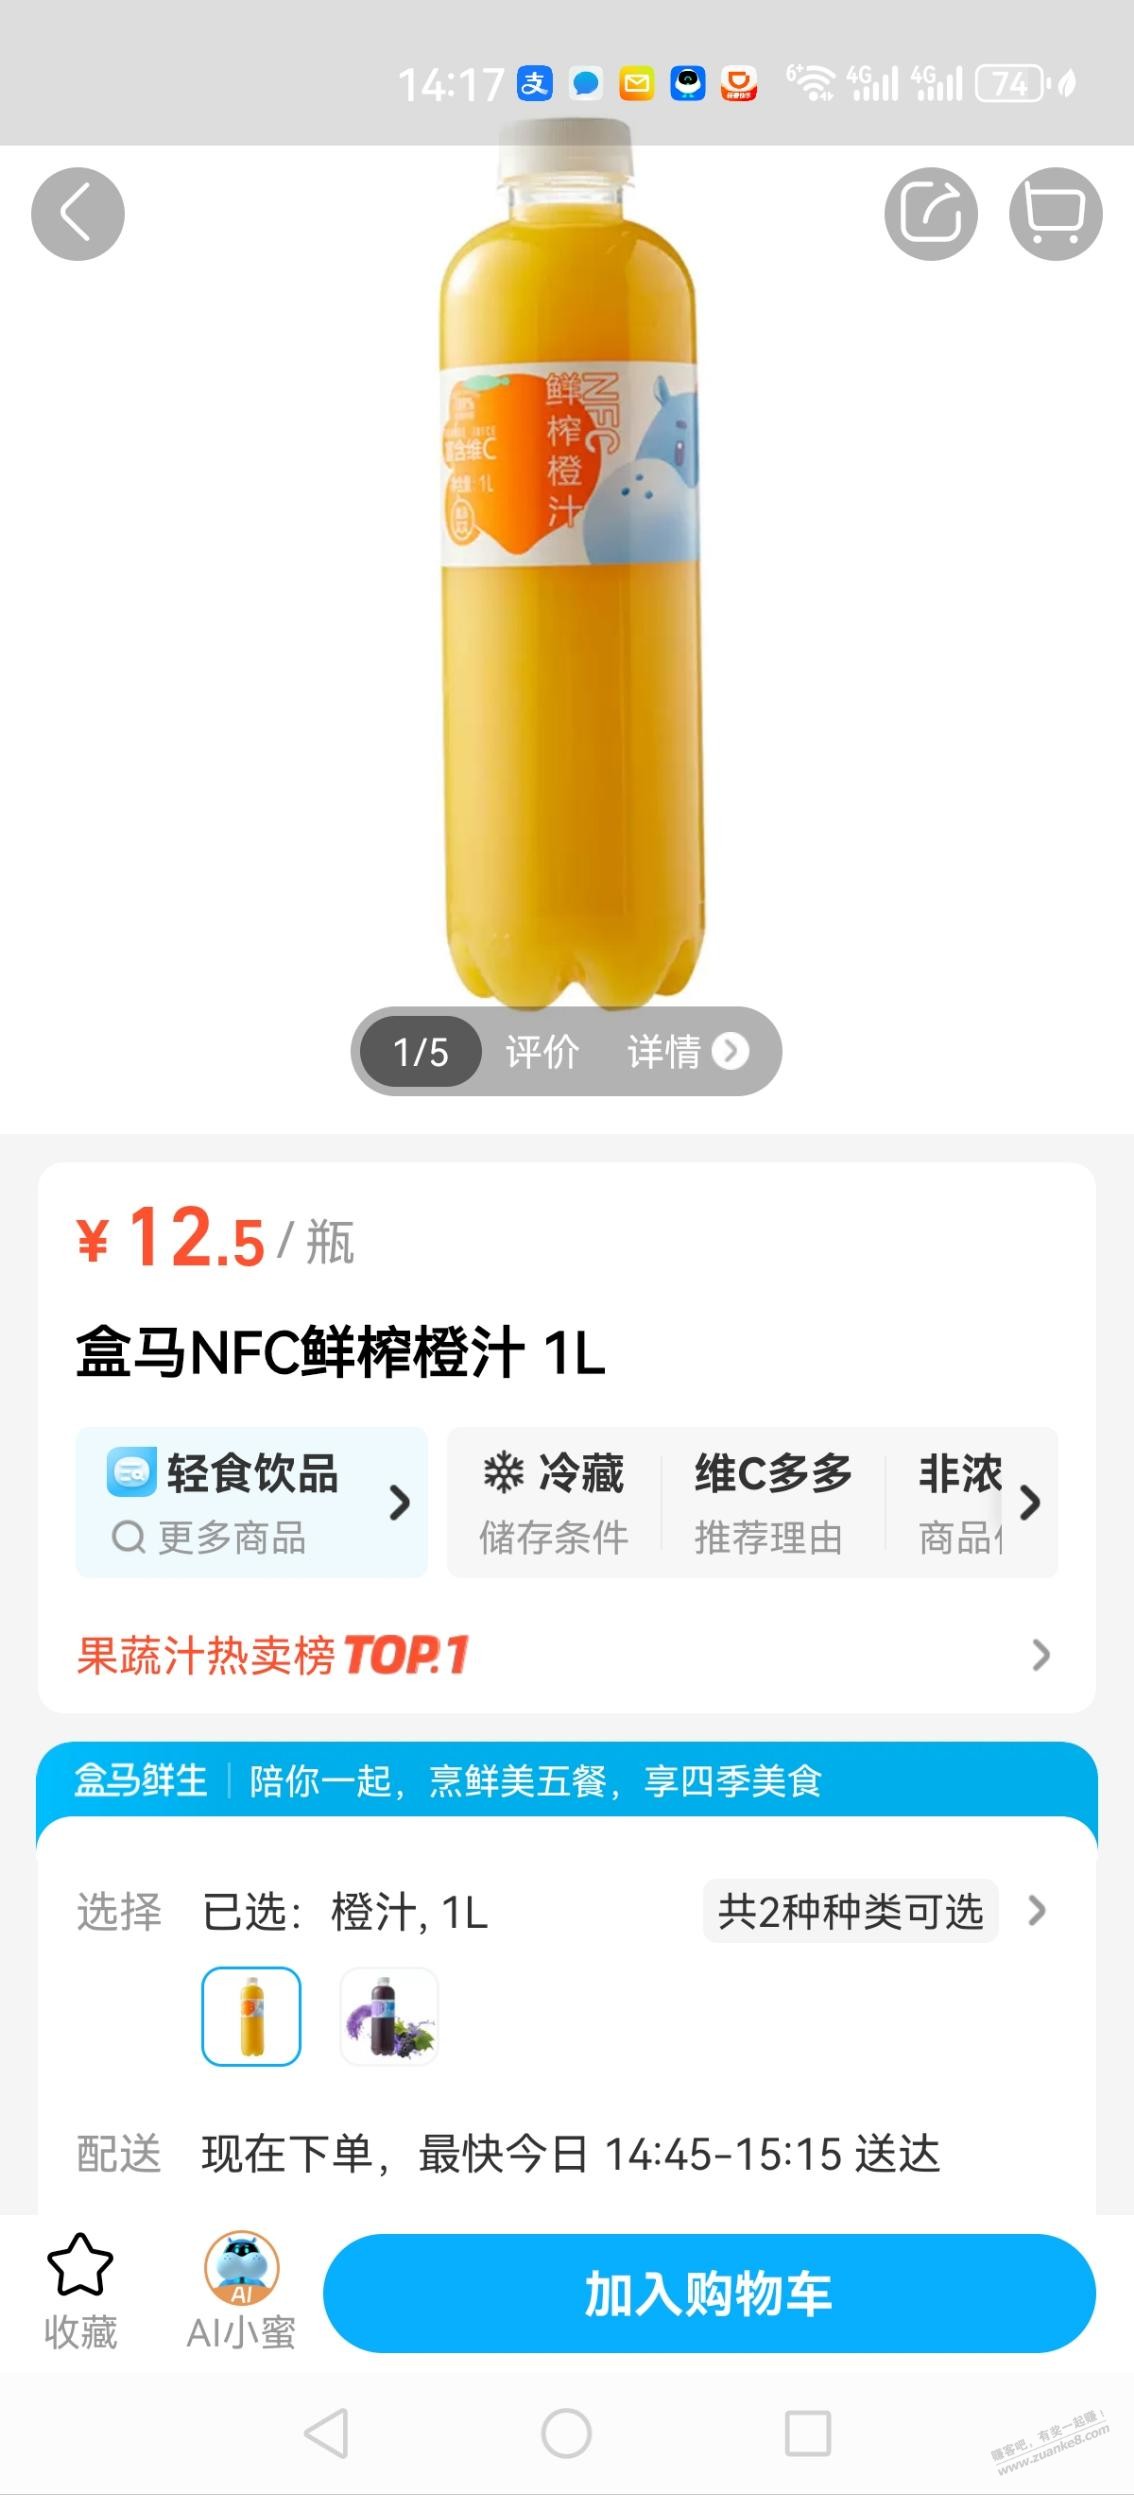 盒马NFC橙汁好价